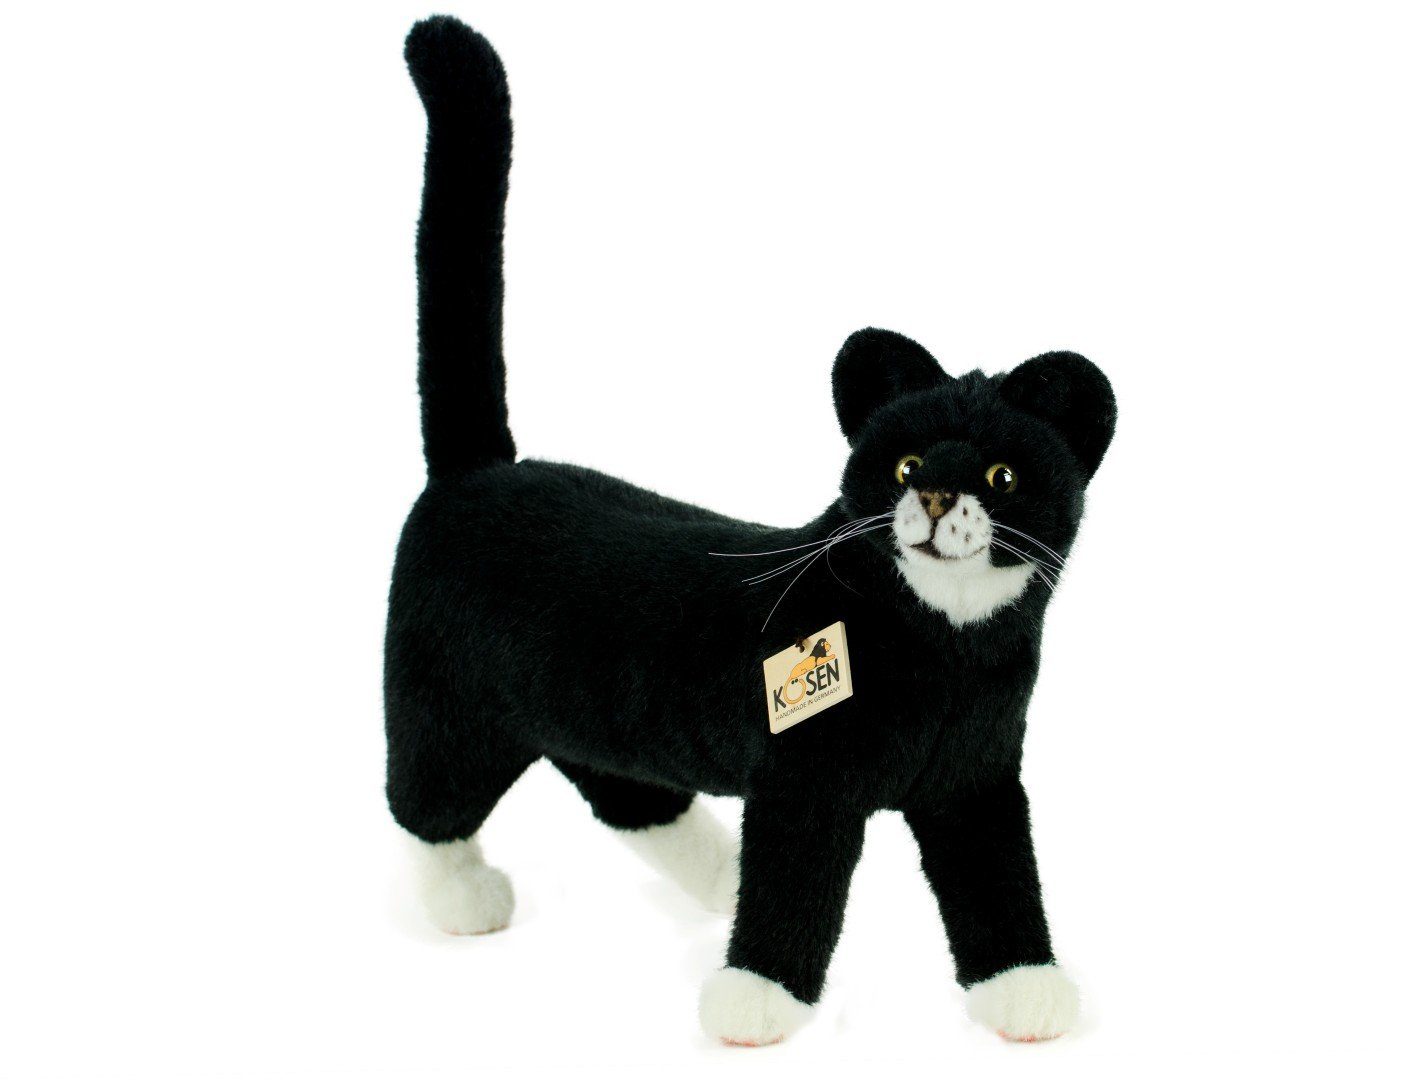 Kösen Kuscheltier Katze Mauz schwarz-weiß 40cm stehend